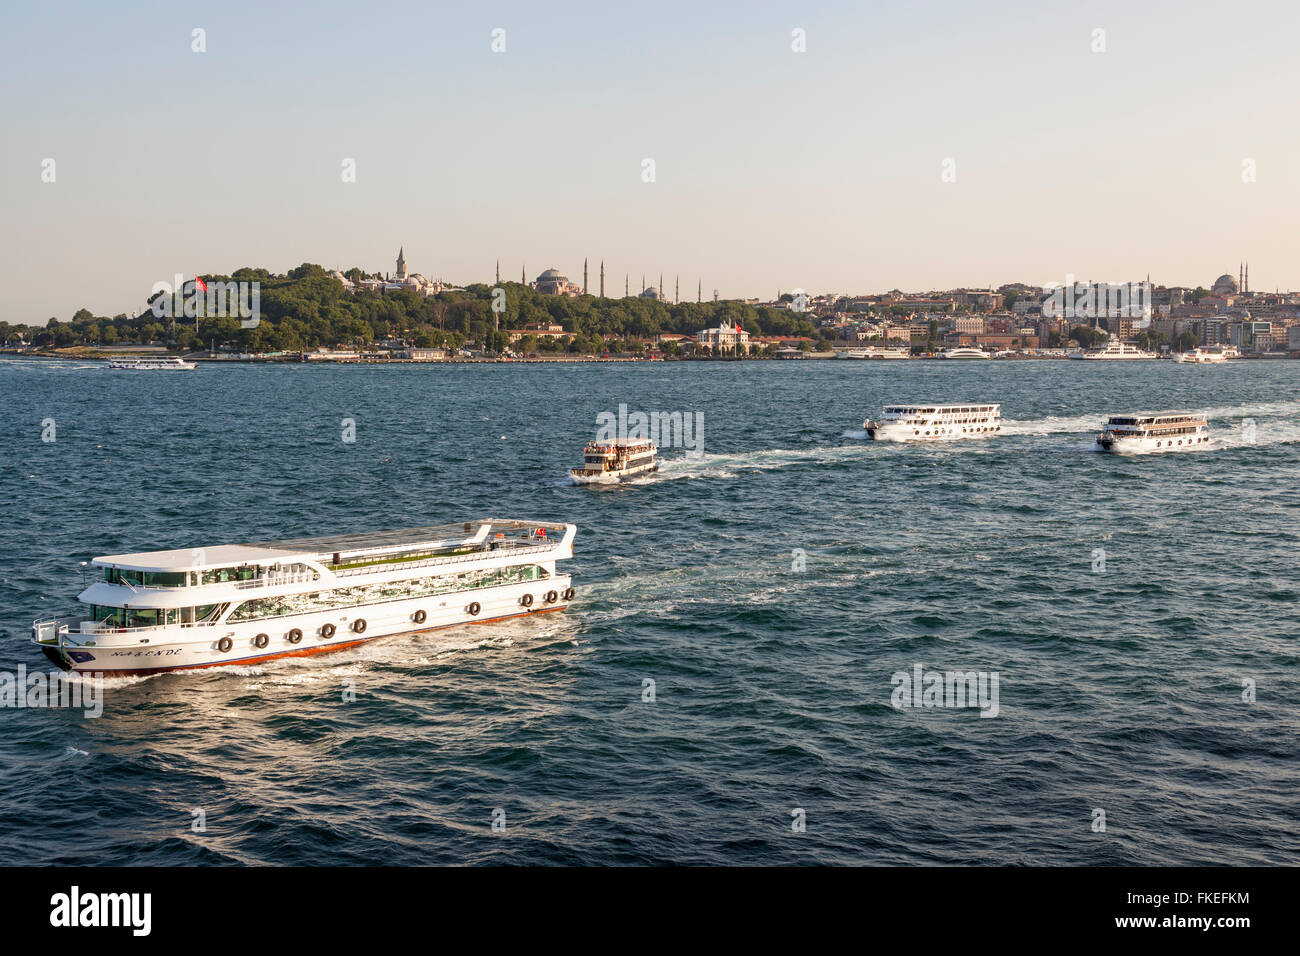 Los transbordadores en el Estrecho del Bósforo, el Palacio de Topkapi, la mezquita de Santa Sofía y la Mezquita de Sultanahmet (Mezquita Azul) Estambul, Turquía Foto de stock